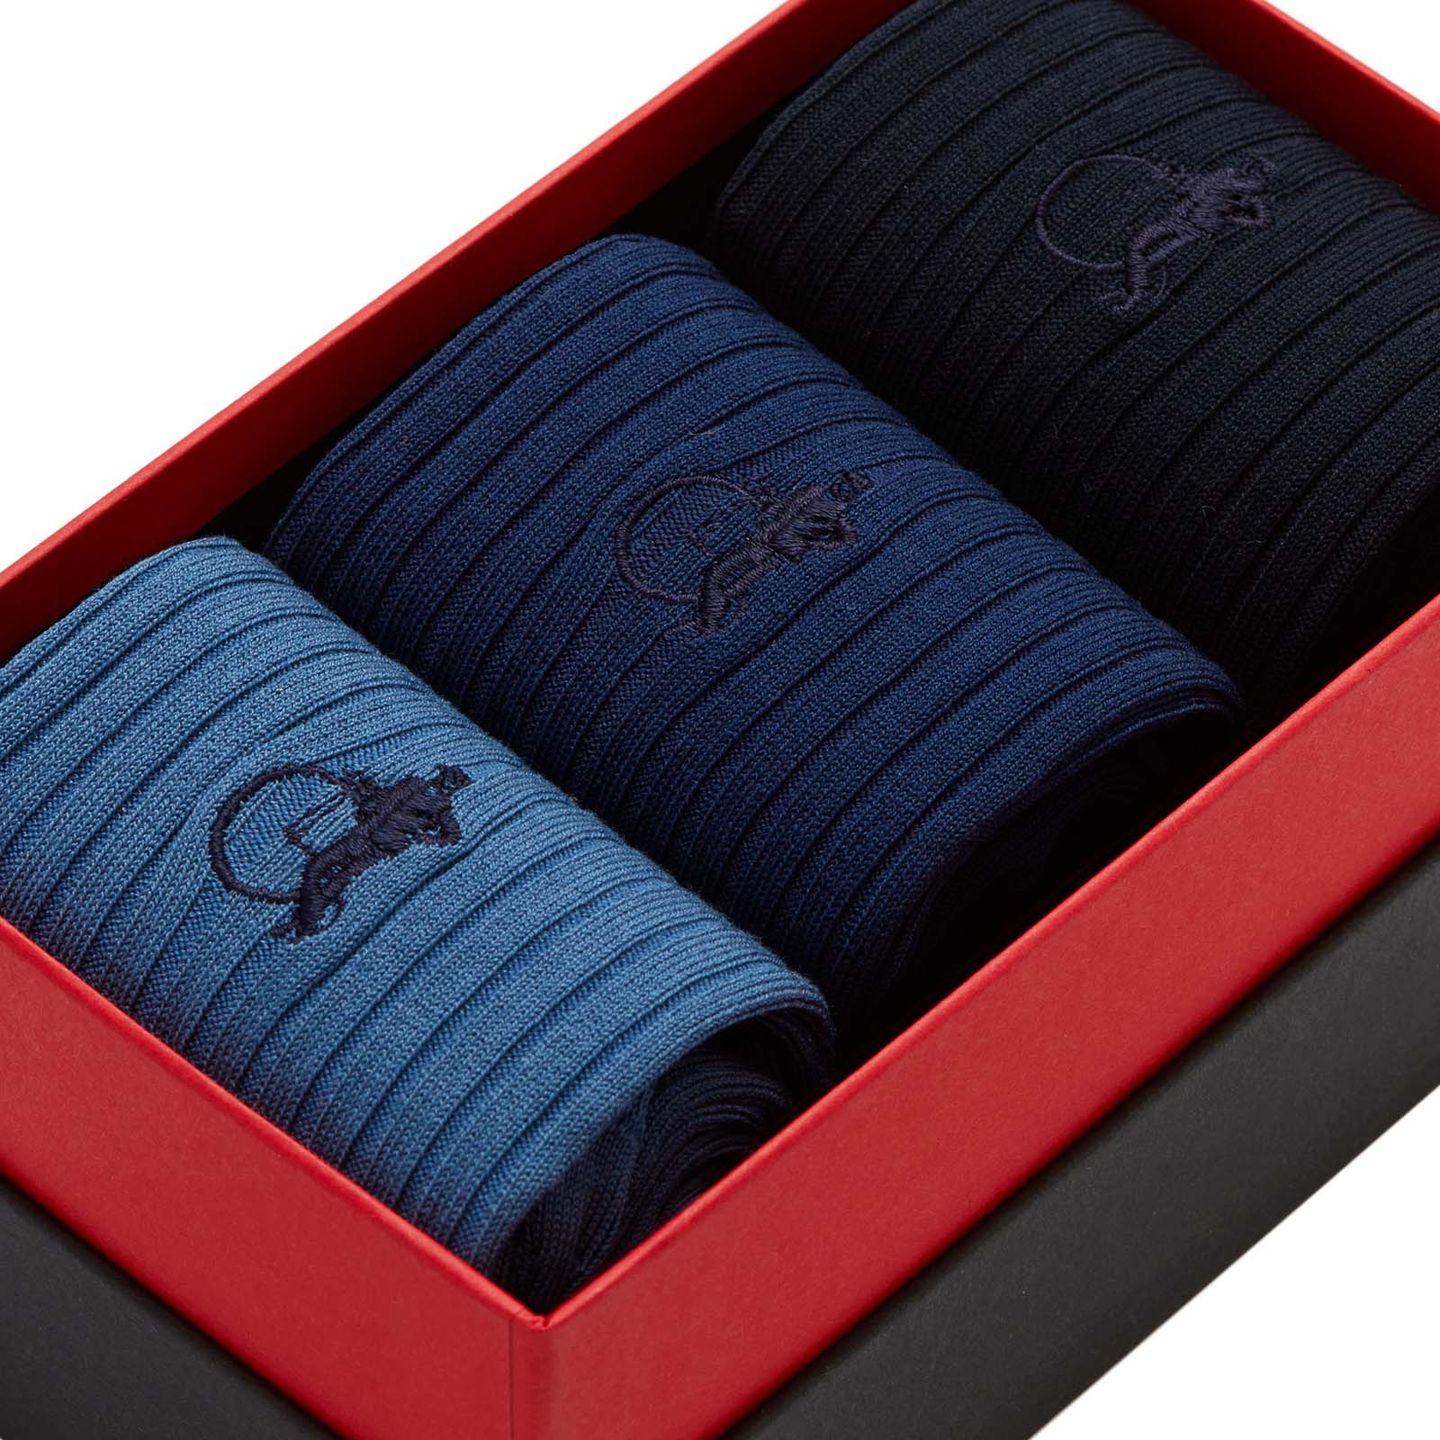 3 pair of simply blue socks in black, navy and denim blue